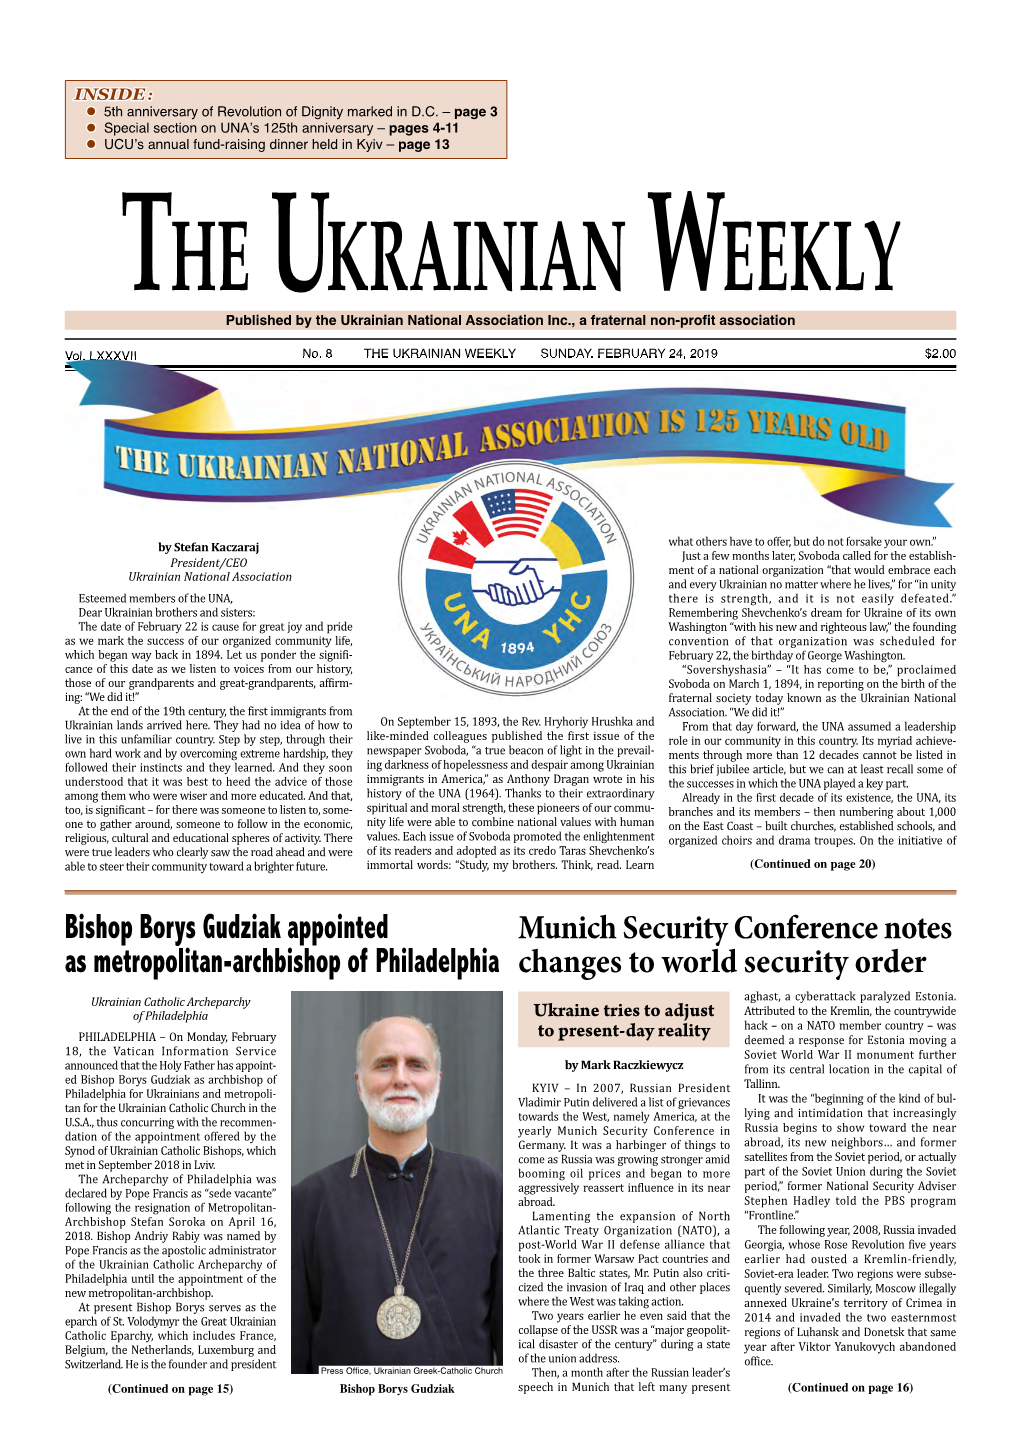 The Ukrainian Weekly, 2019